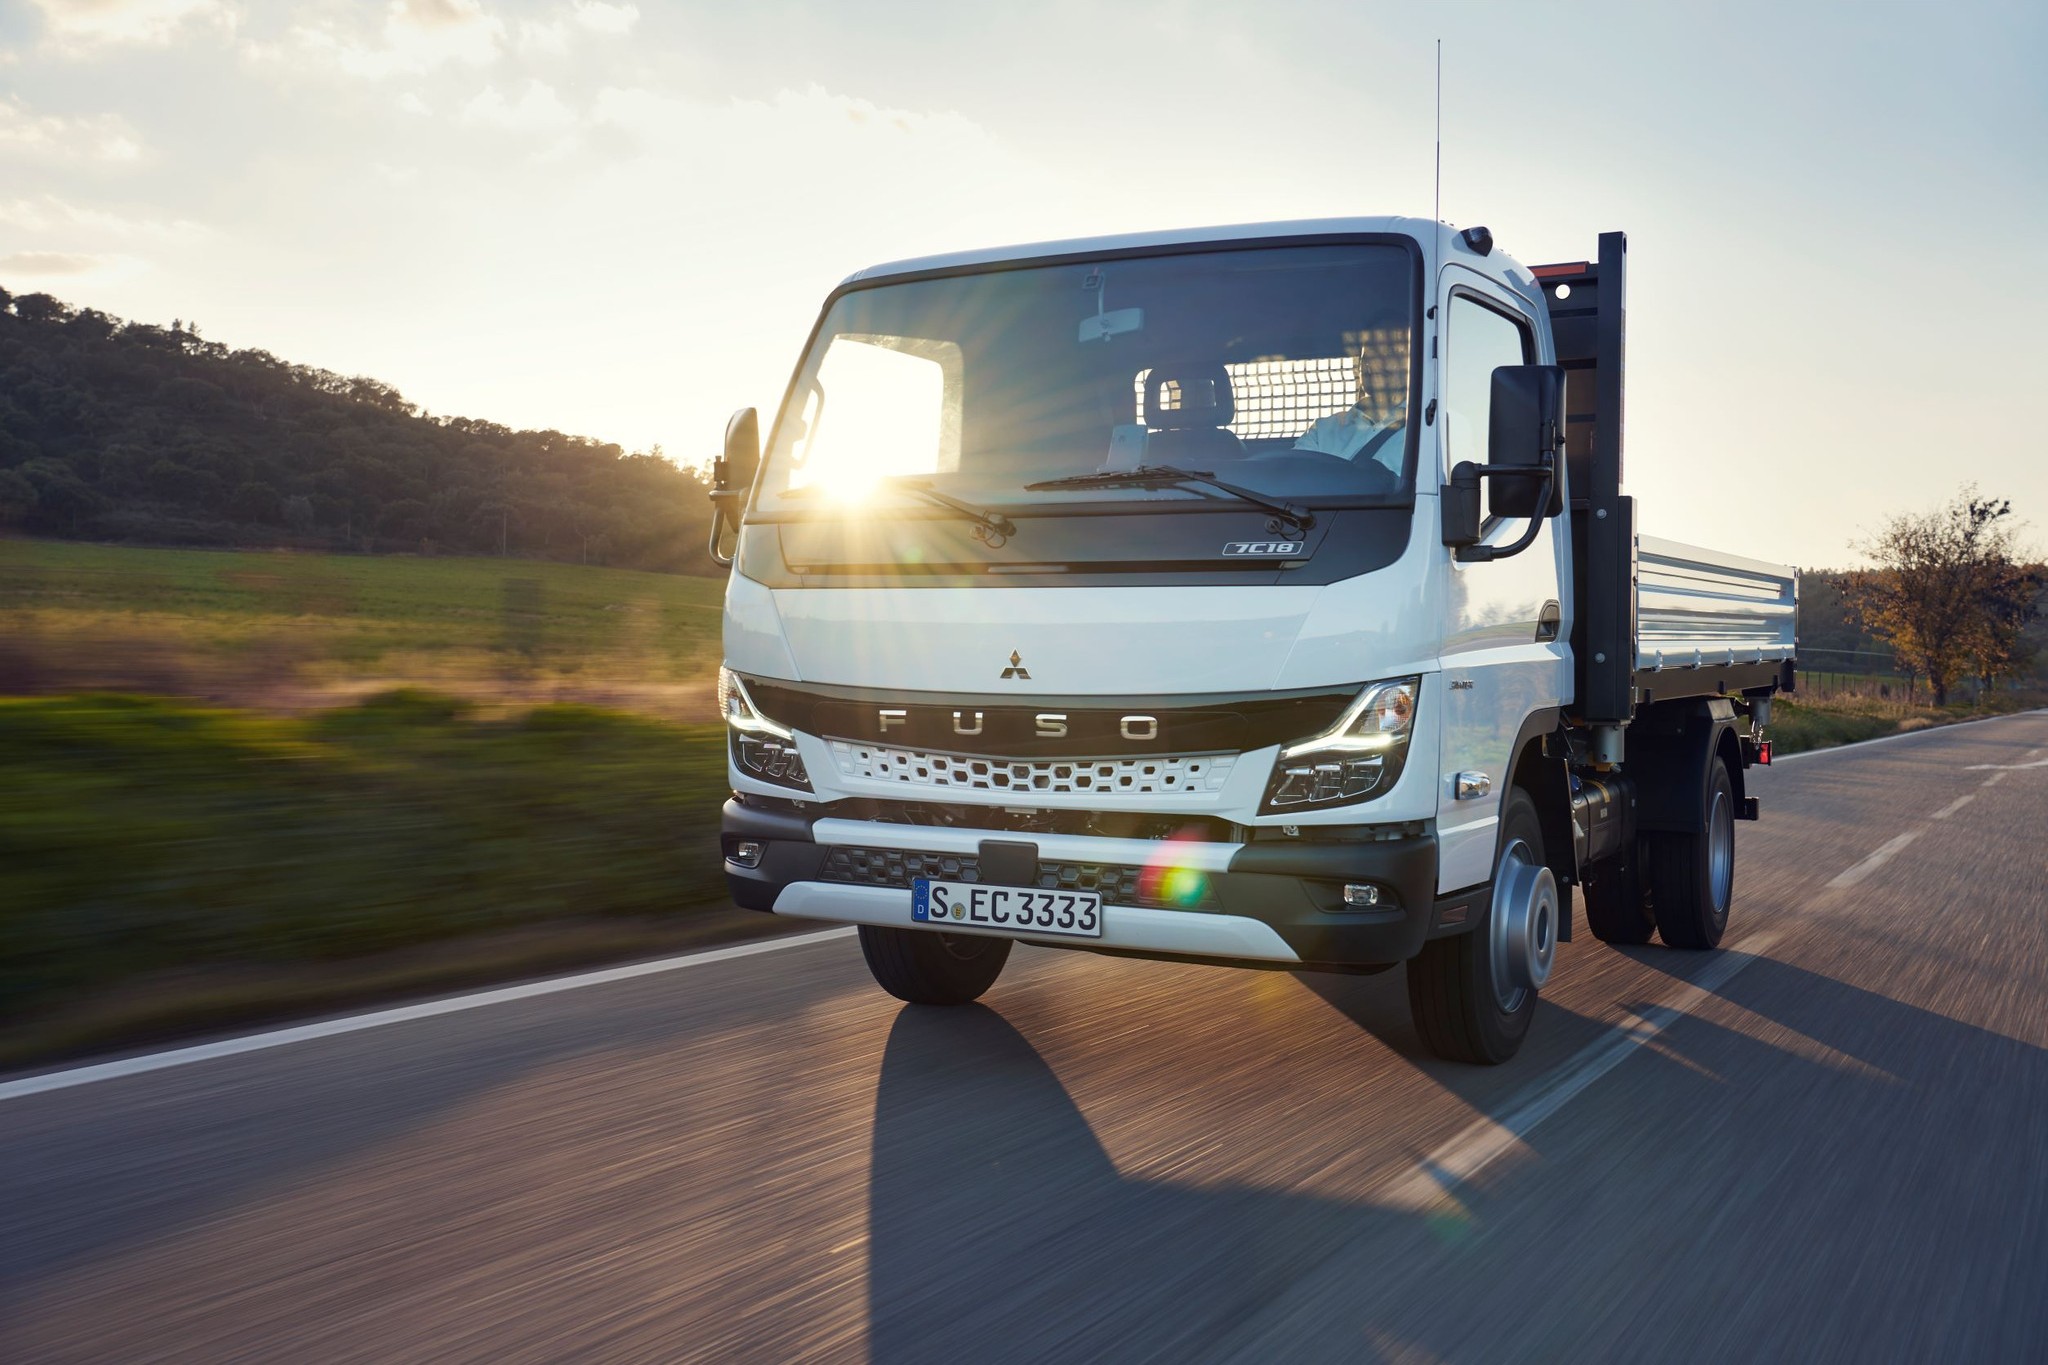 Produktionsstart für den neuen FUSO Canter Leicht-Lkw in Europa